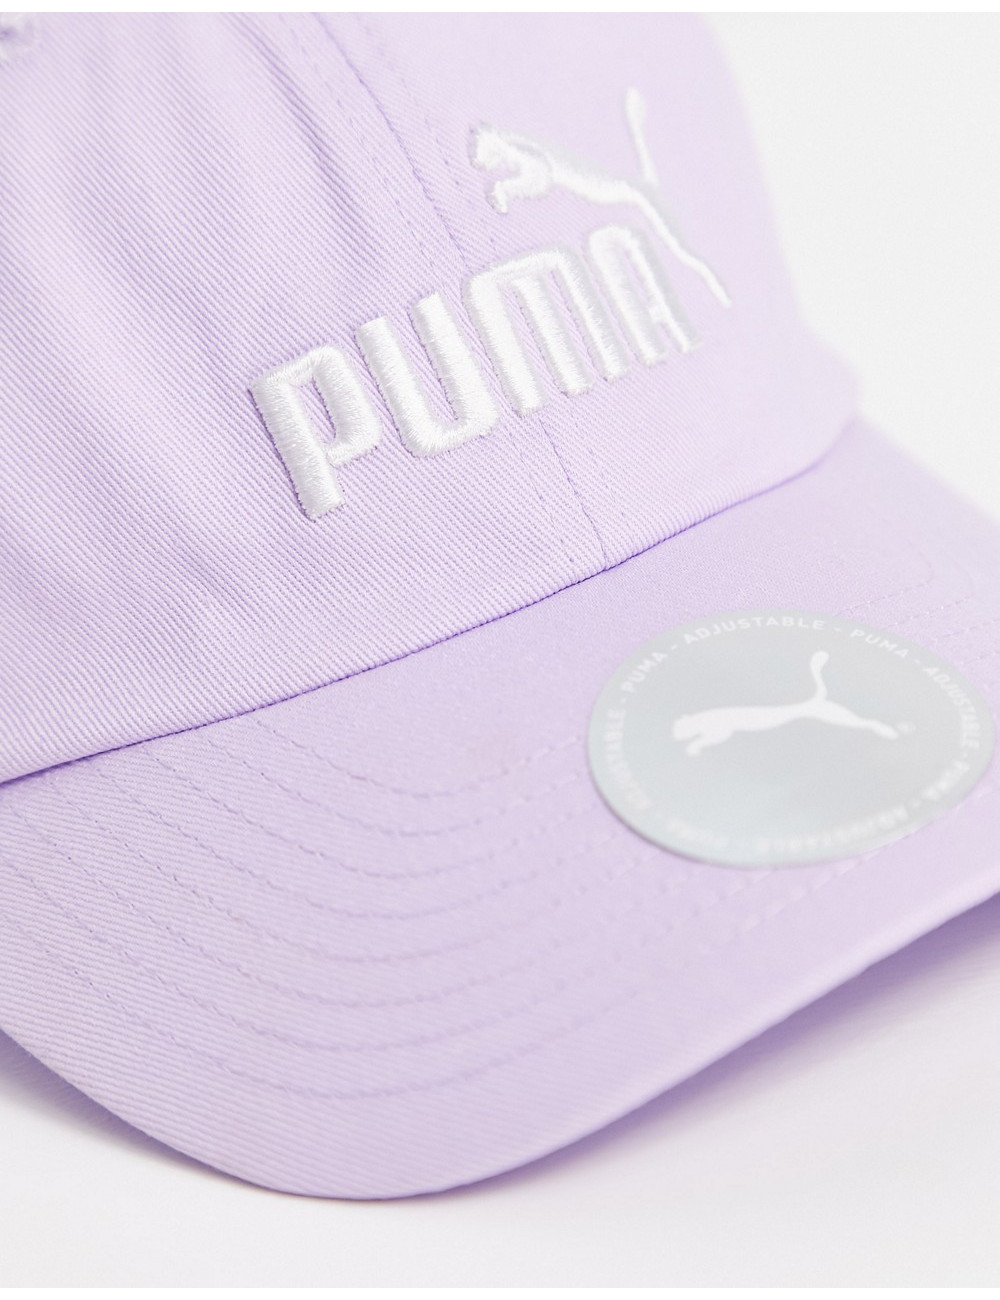 Puma Essentials cap in lilac